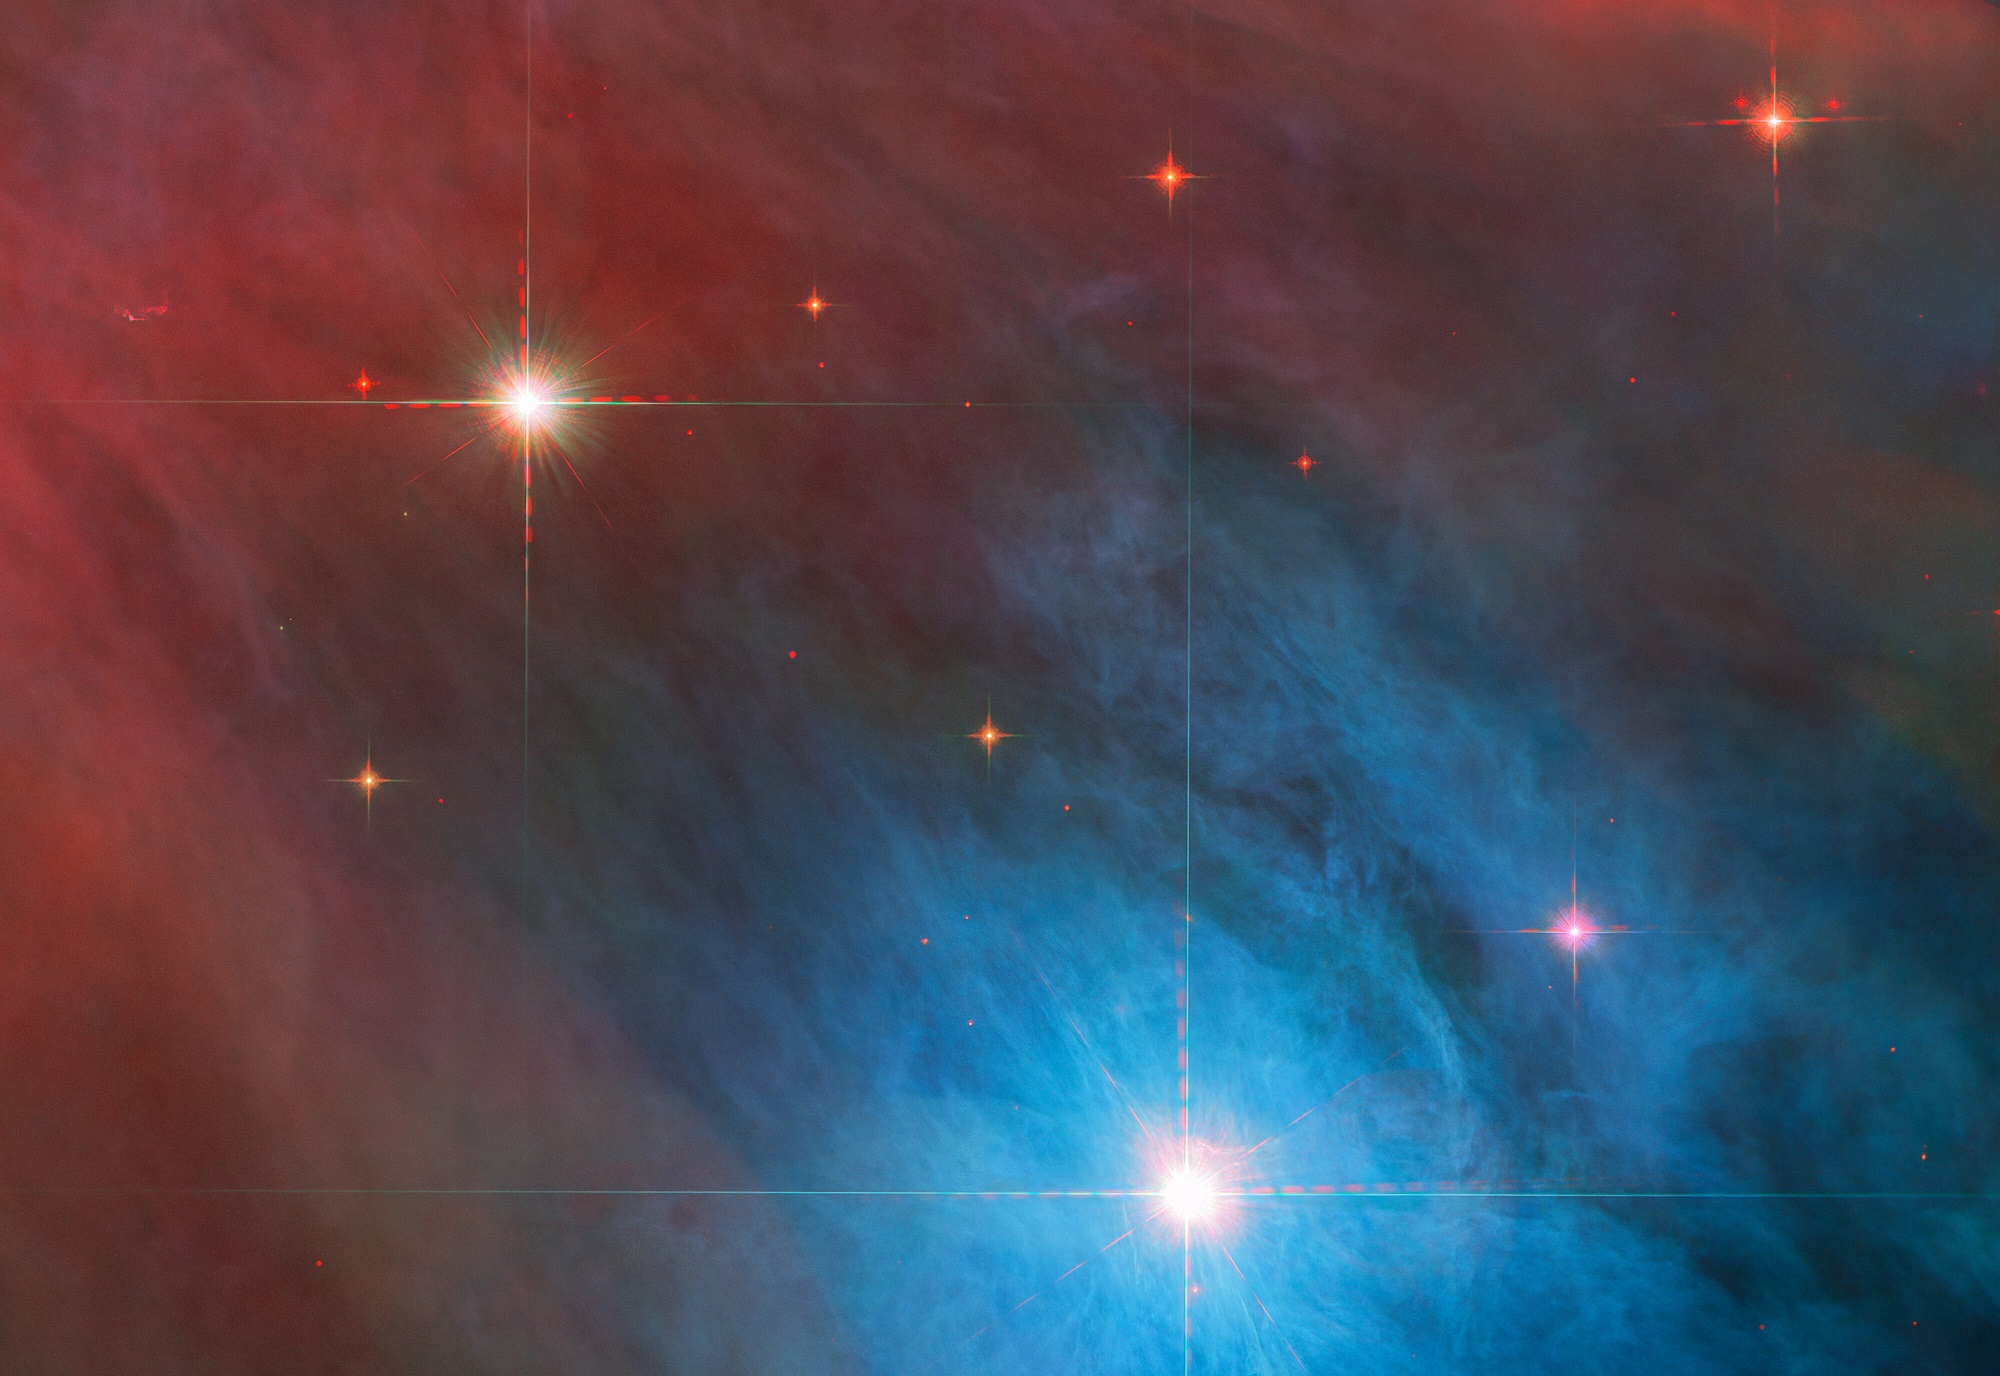 Lenyűgöző csillagpárost örökített meg a Hubble űrtávcső az Orion-ködben